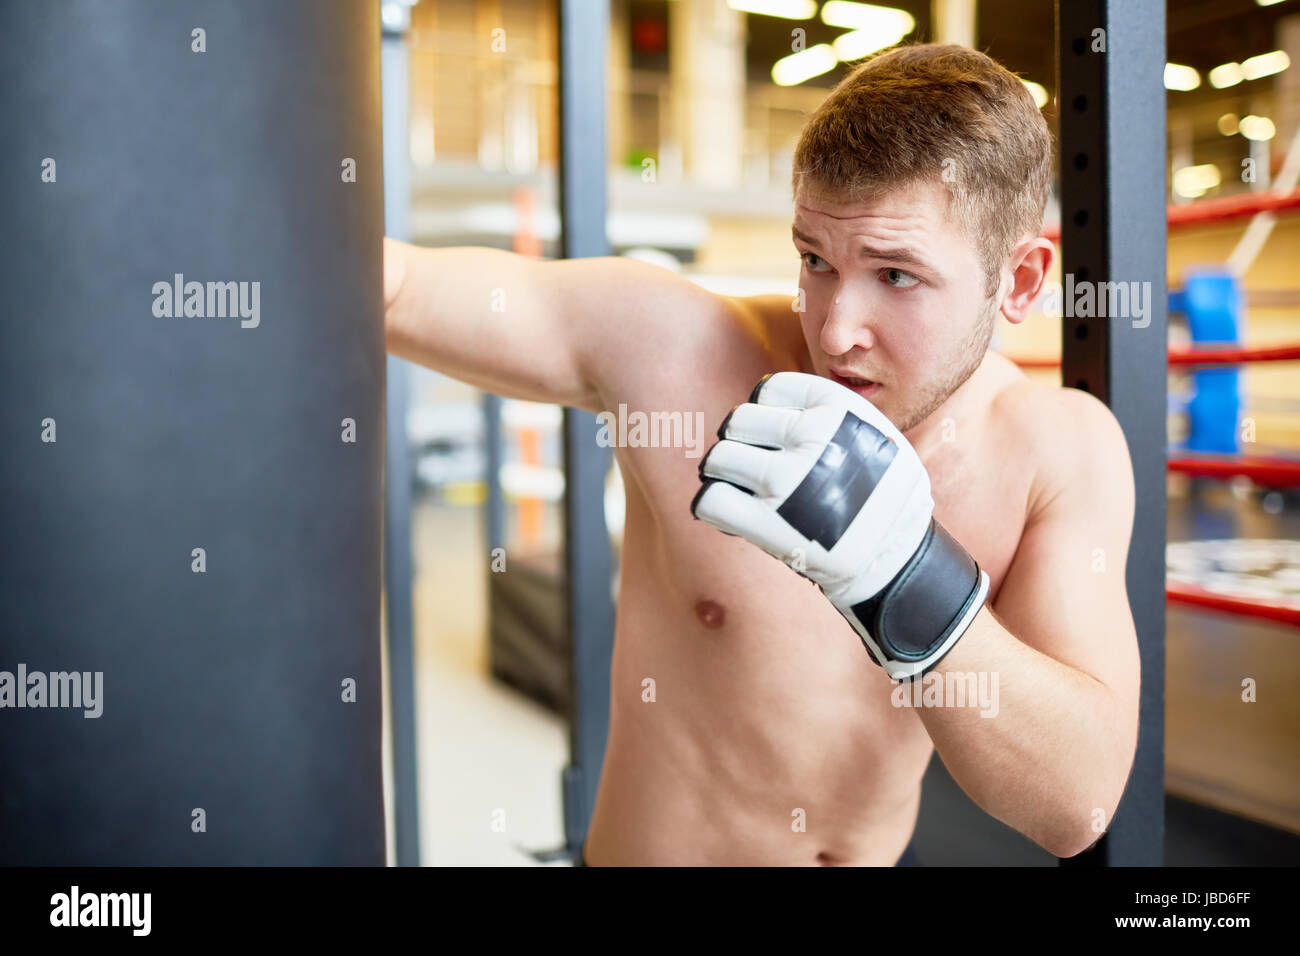 Porträt von nacktem Oberkörper Sport Mann schlägt Boxsack im Boxen Training  im Kampfclub Stockfotografie - Alamy